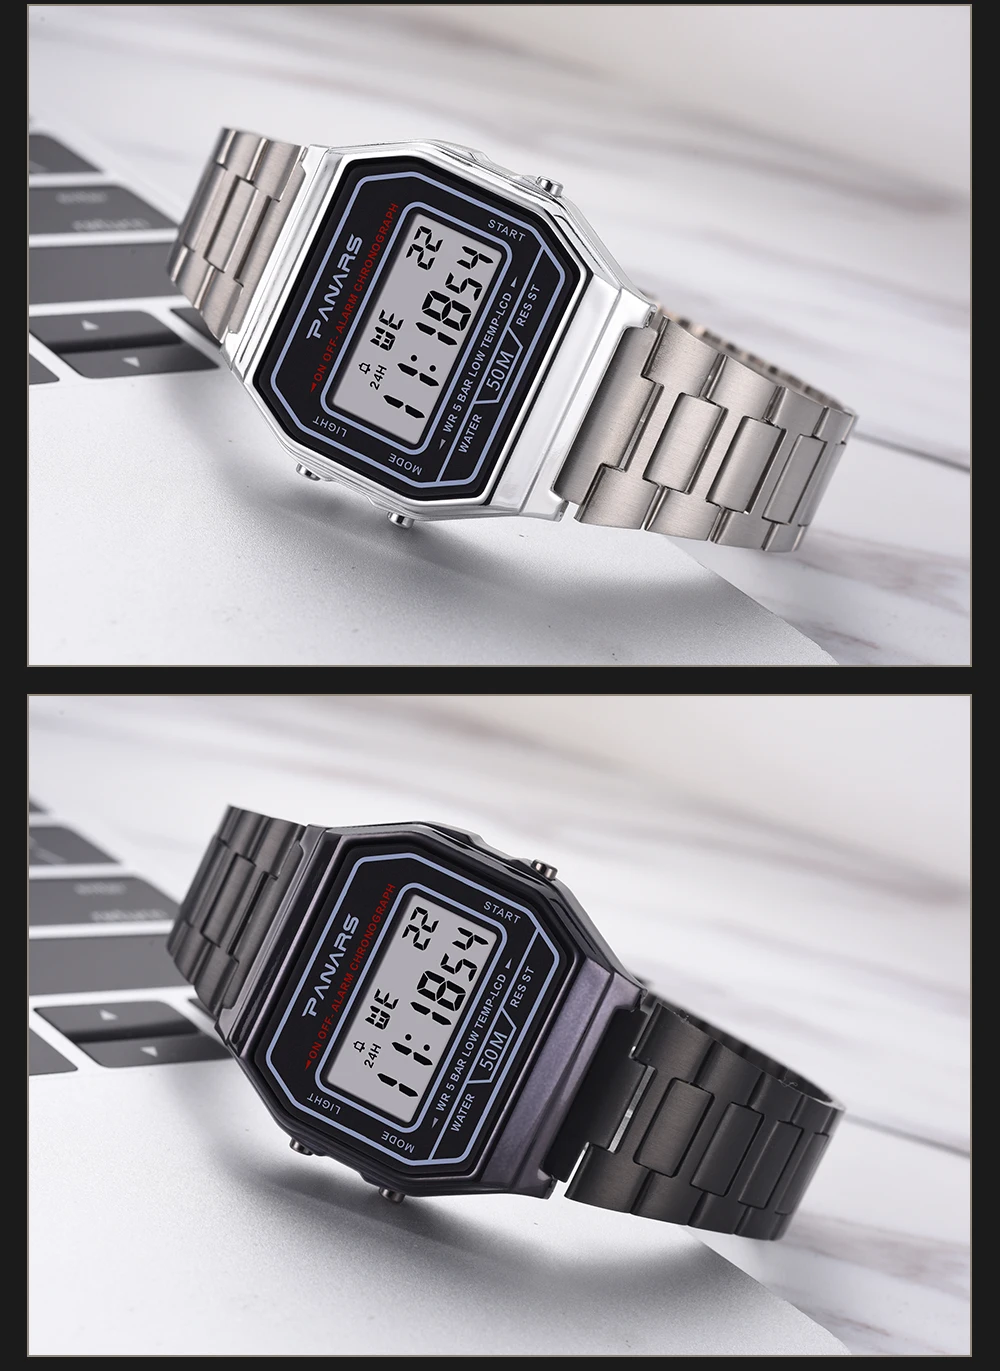 PANARS мужские водонепроницаемые цифровые часы золотого цвета из нержавеющей стали, часы для мужчин и женщин, спортивные часы, простые модные наручные часы